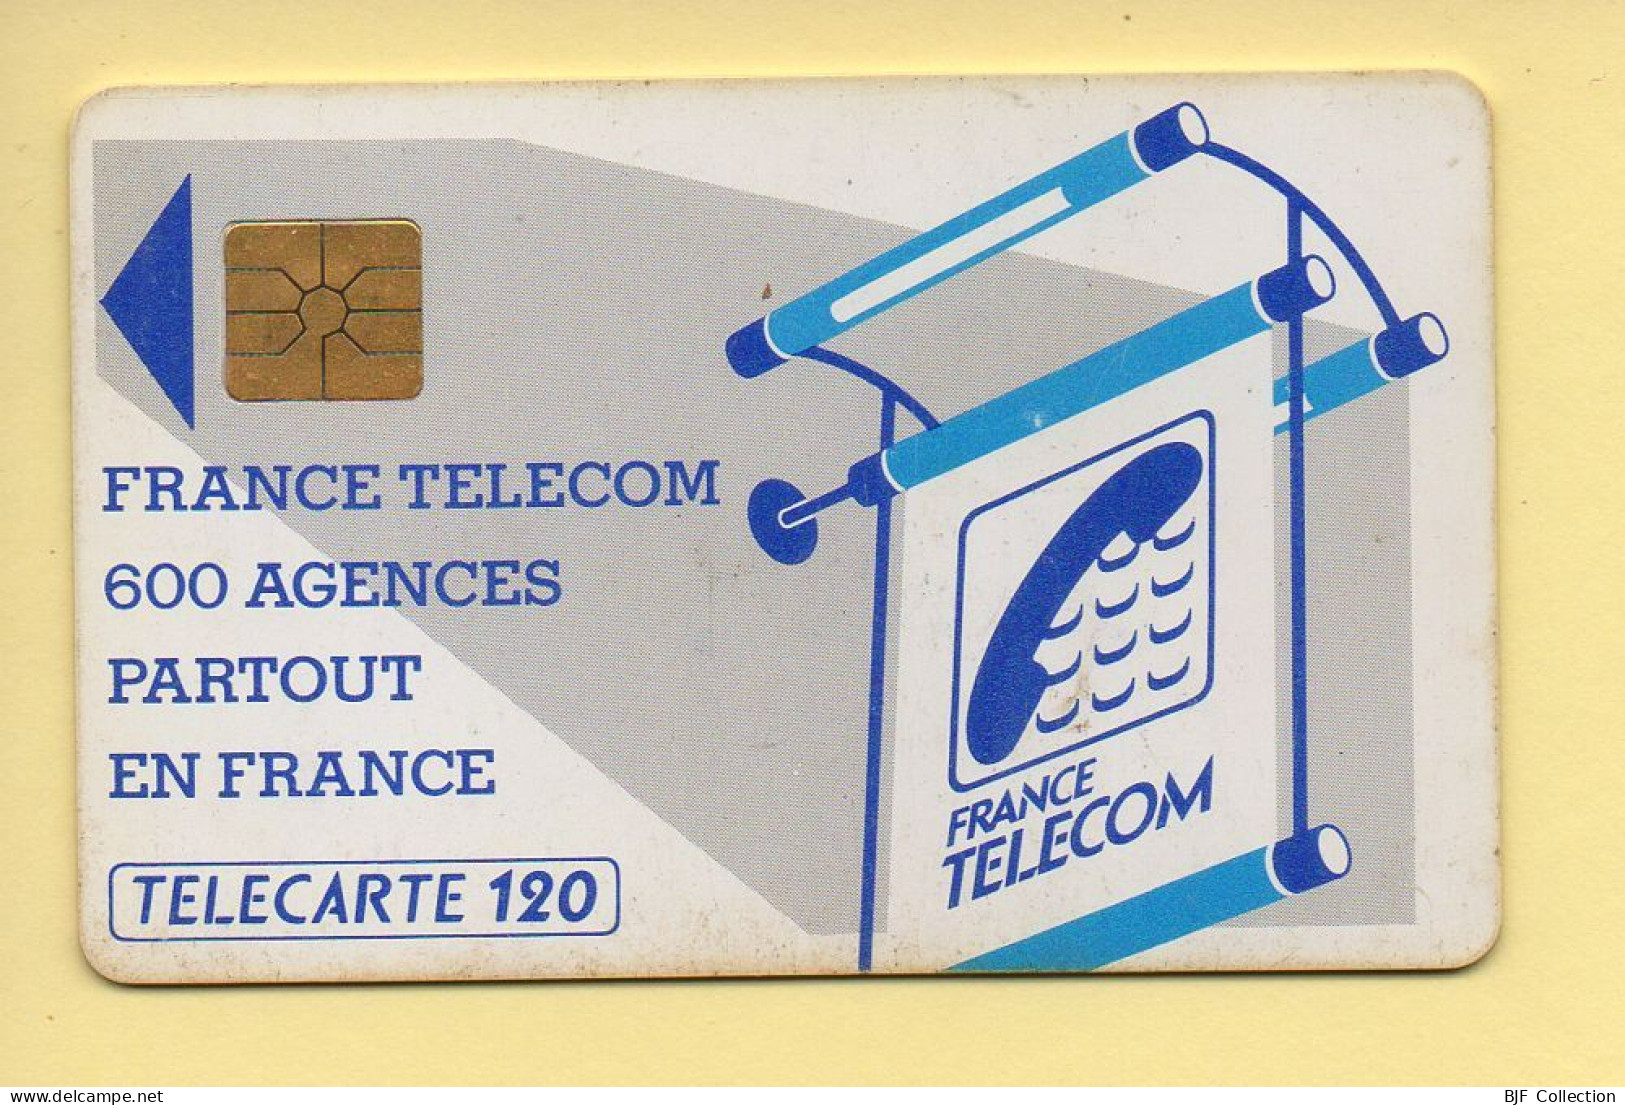 Télécarte : 600 Agences / 120 Unités : Numéro B0B17F (voir Cadre, Texte Et Numérotation) - 600 Agences